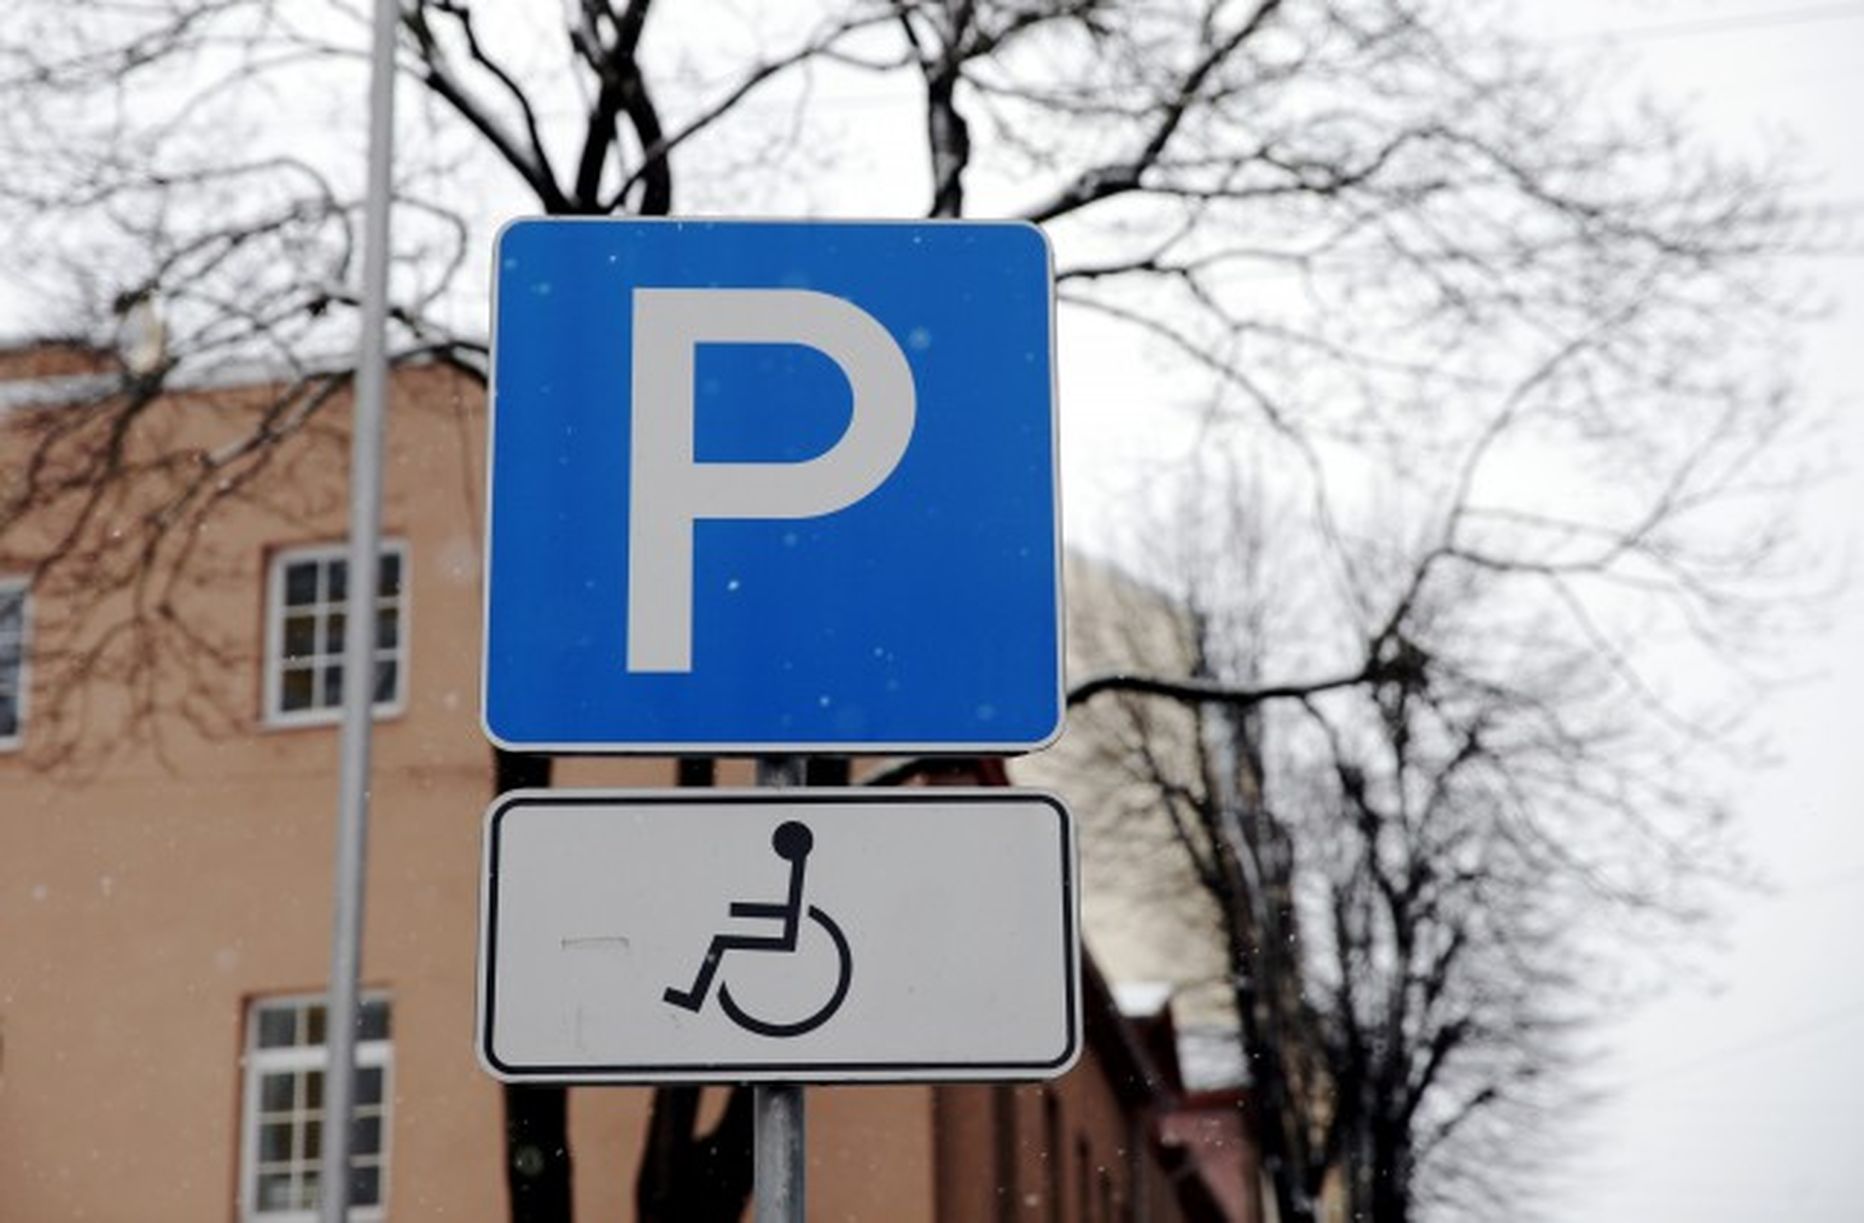 Инвалиду можно парковаться на платной парковке